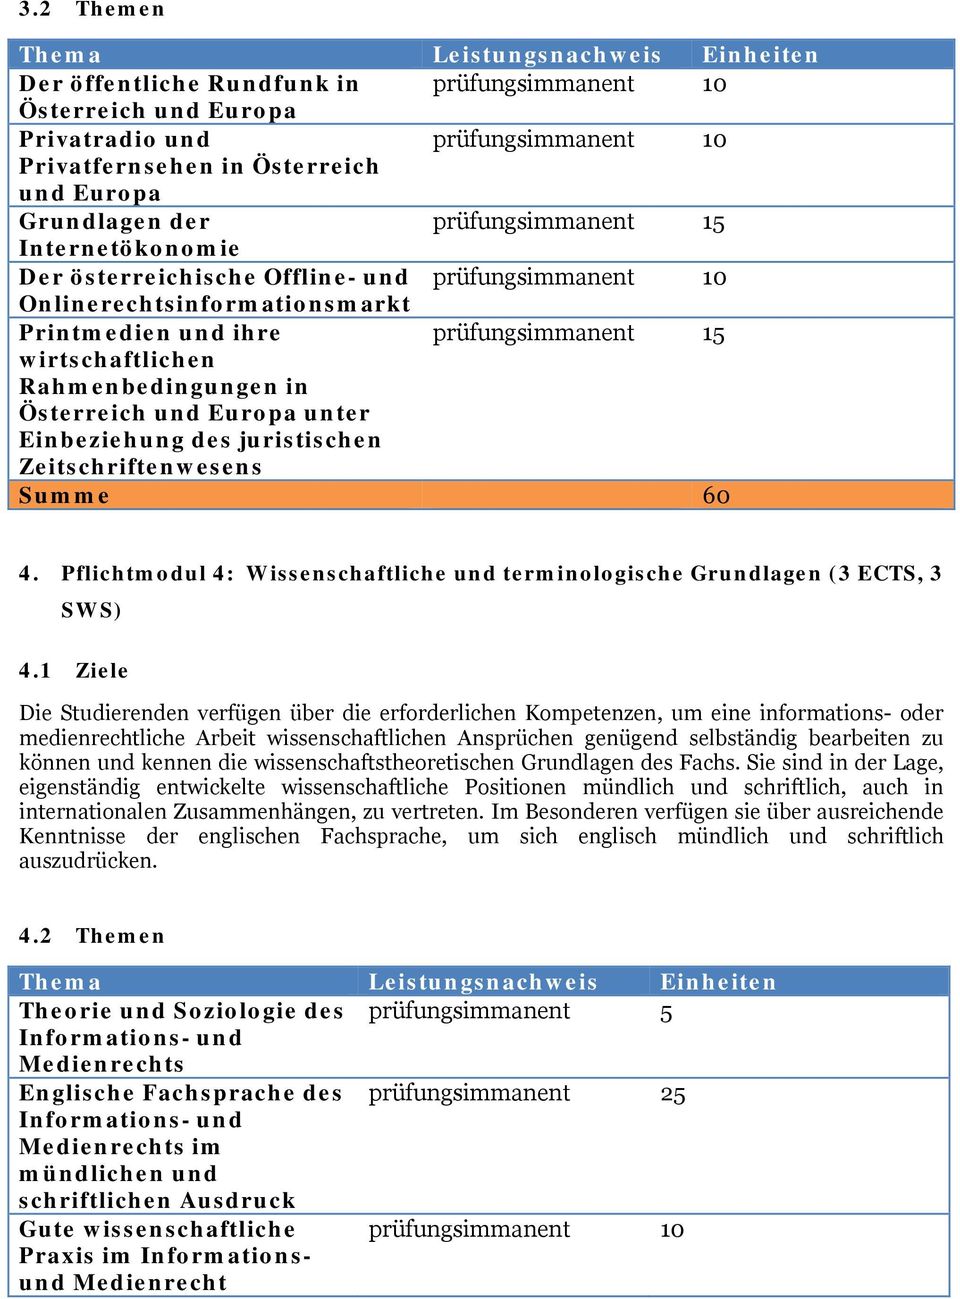 4. Pflichtmodul 4: Wissenschaftliche und terminologische Grundlagen (3 ECTS, 3 SWS) 4.